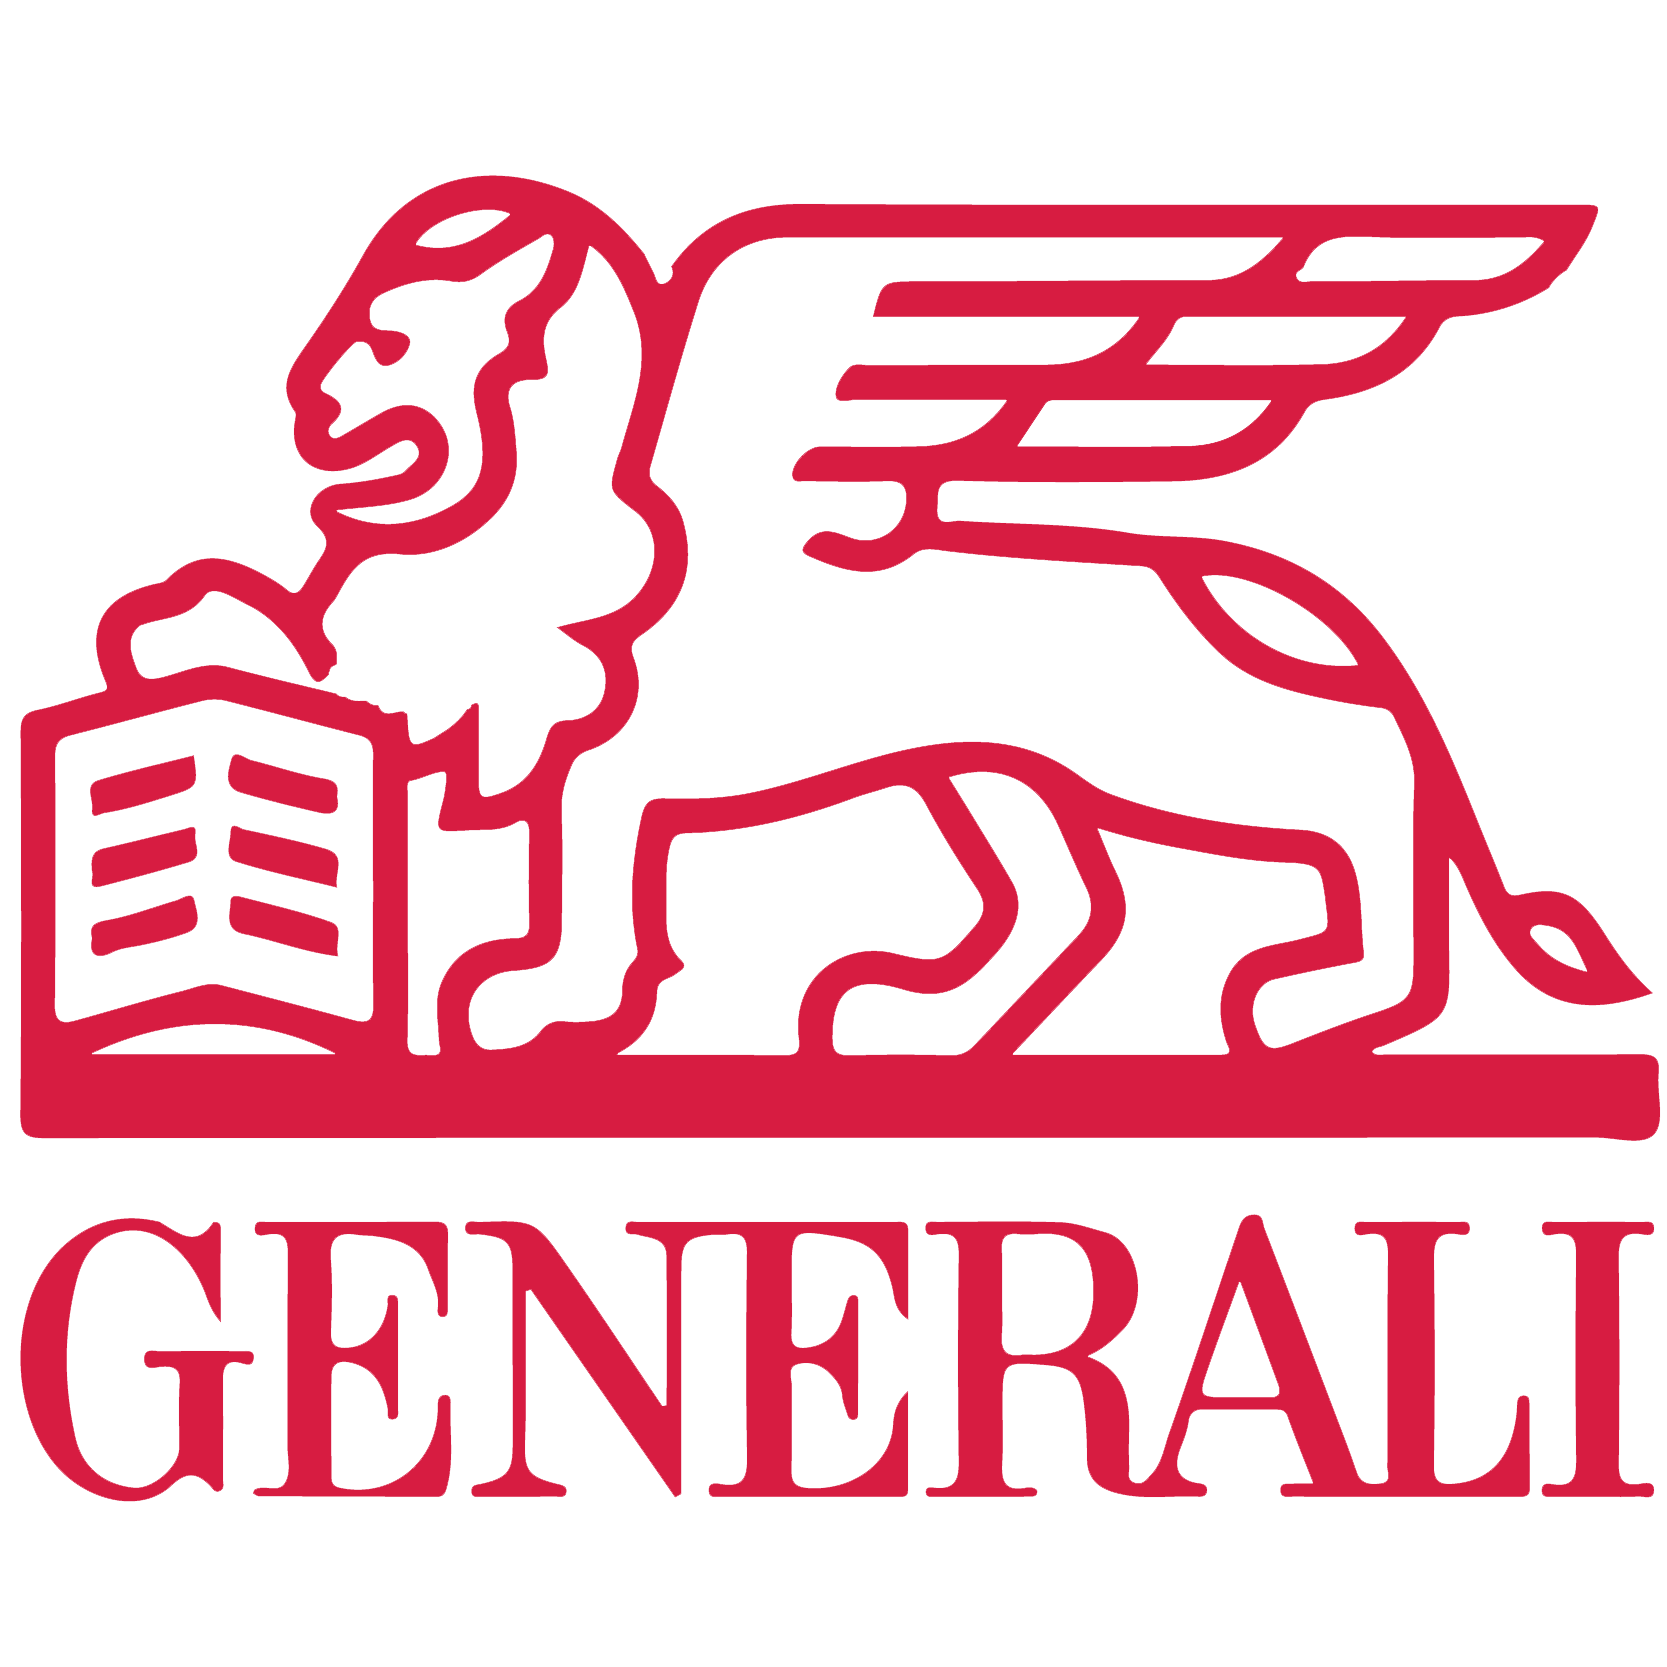 Générali logo